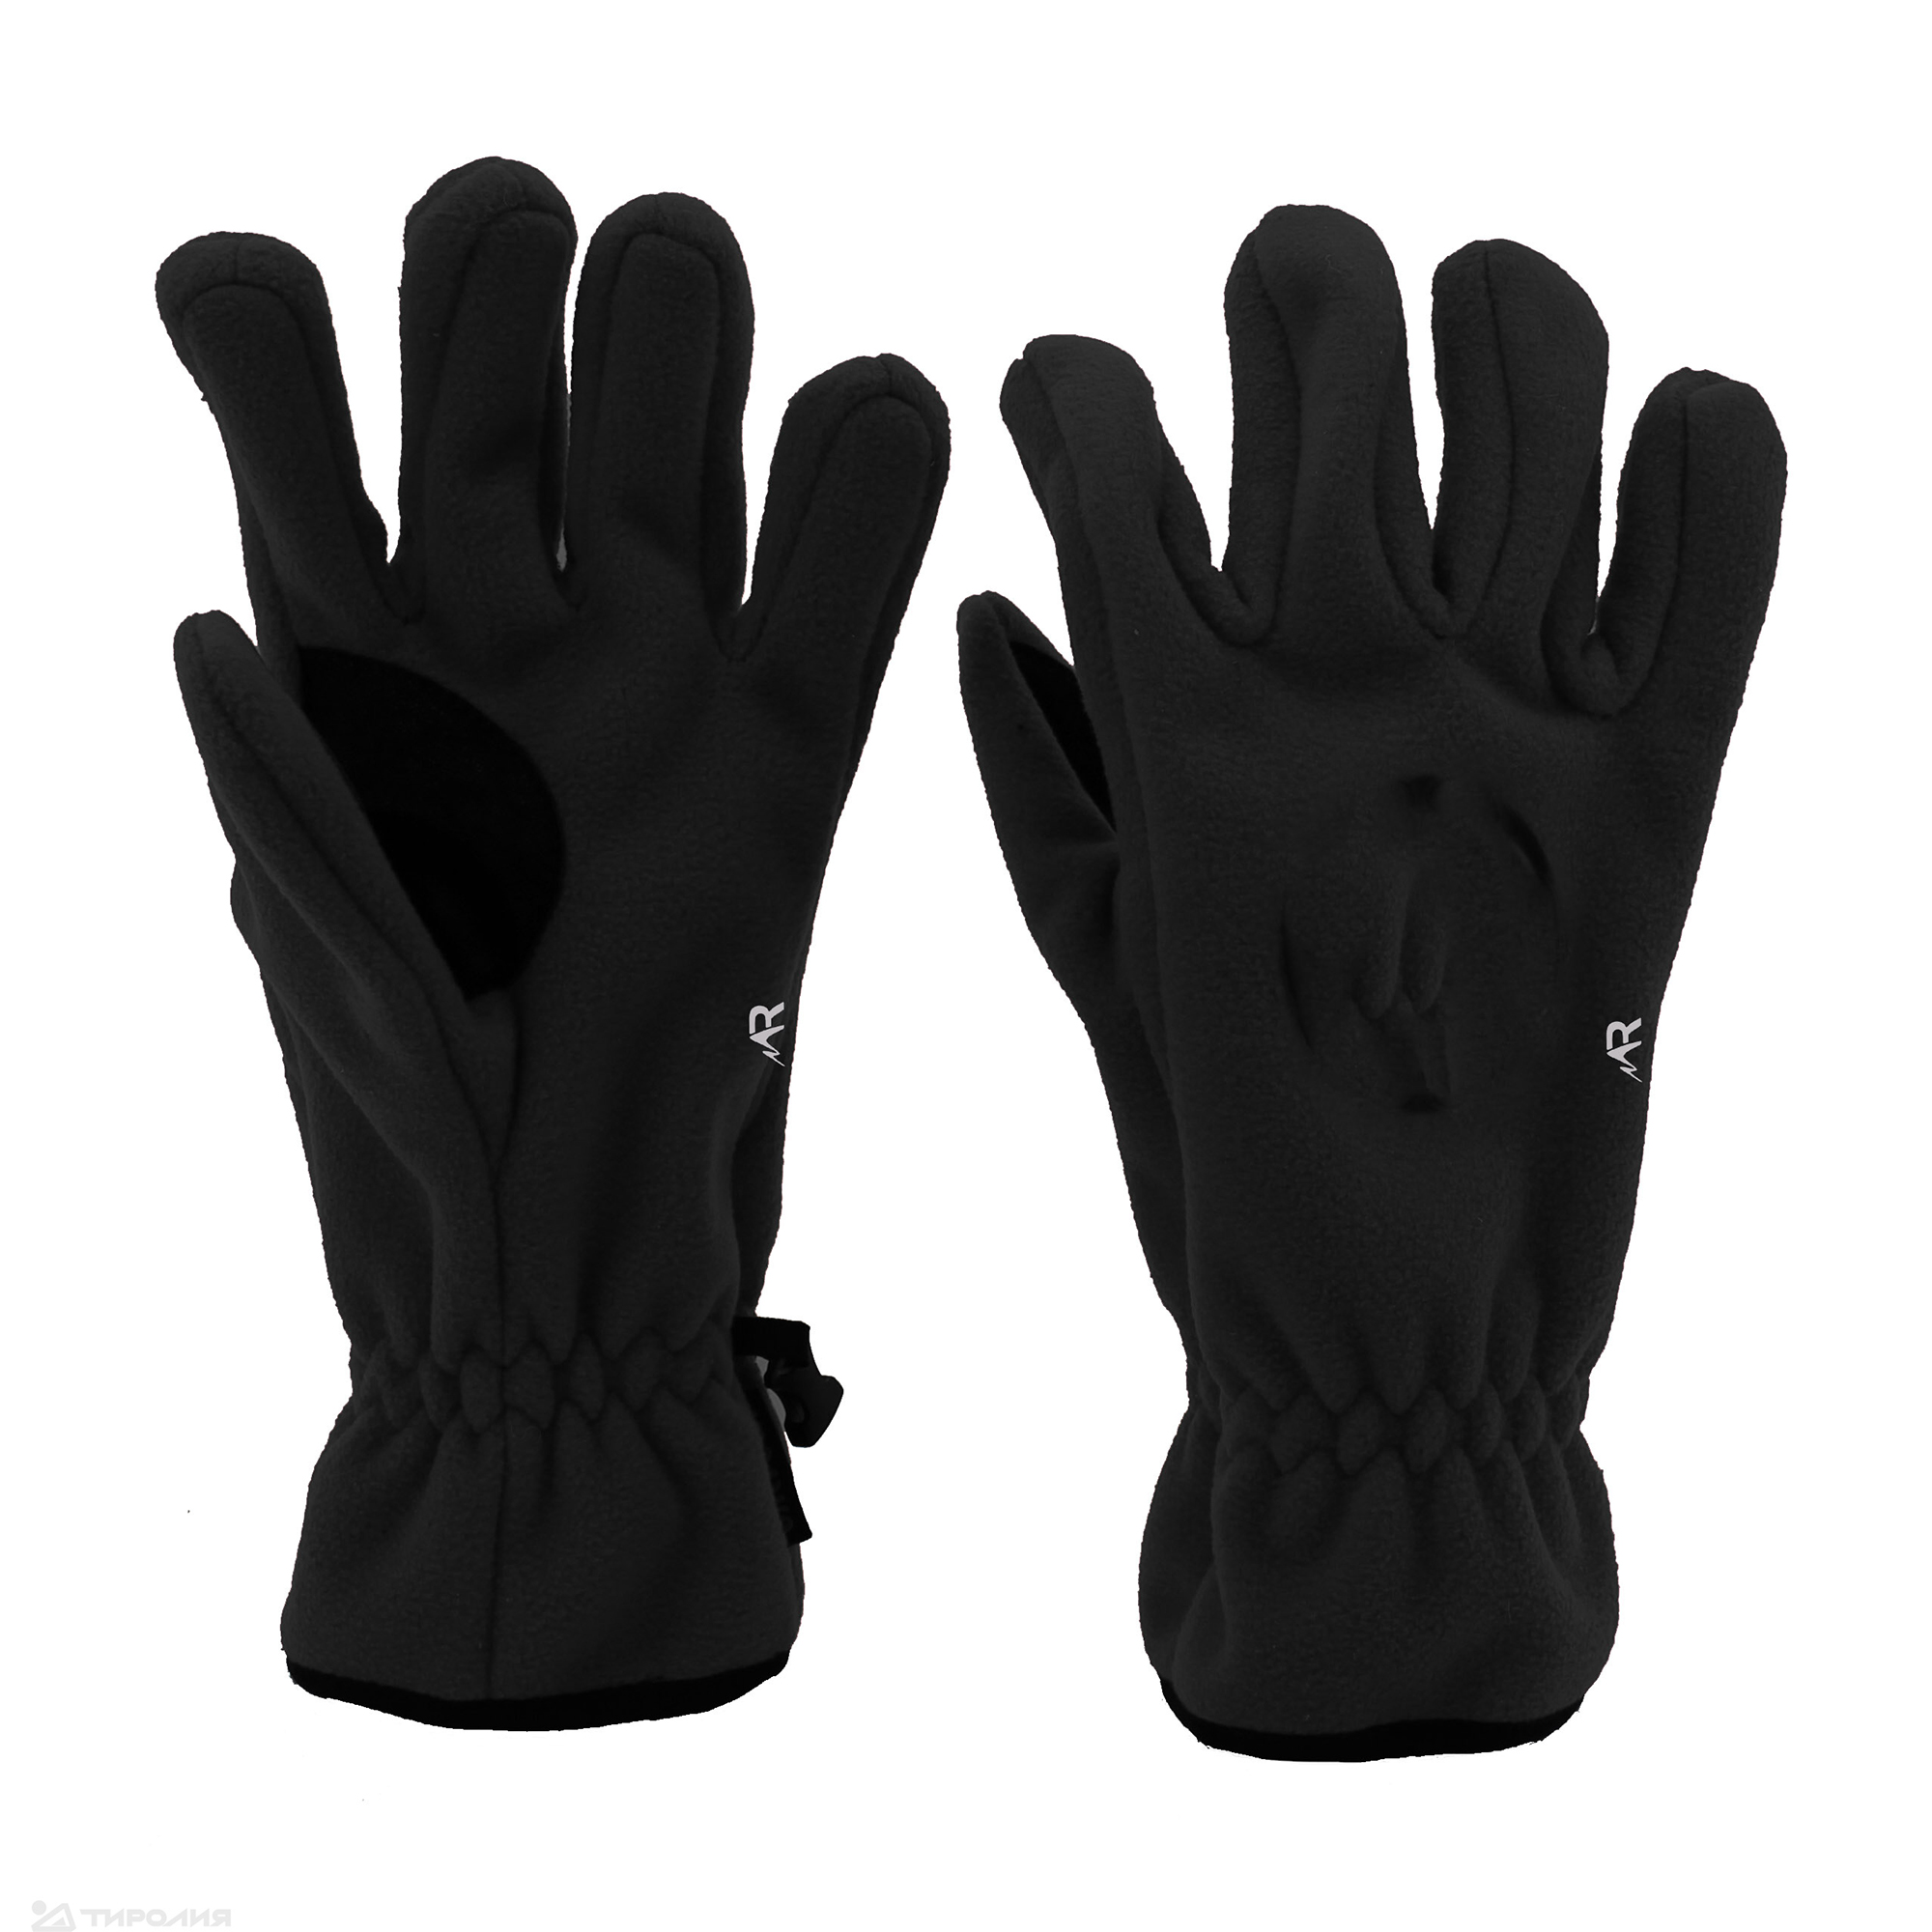 Перчатки Rosomaha Кама черные размер XL, 11 RU